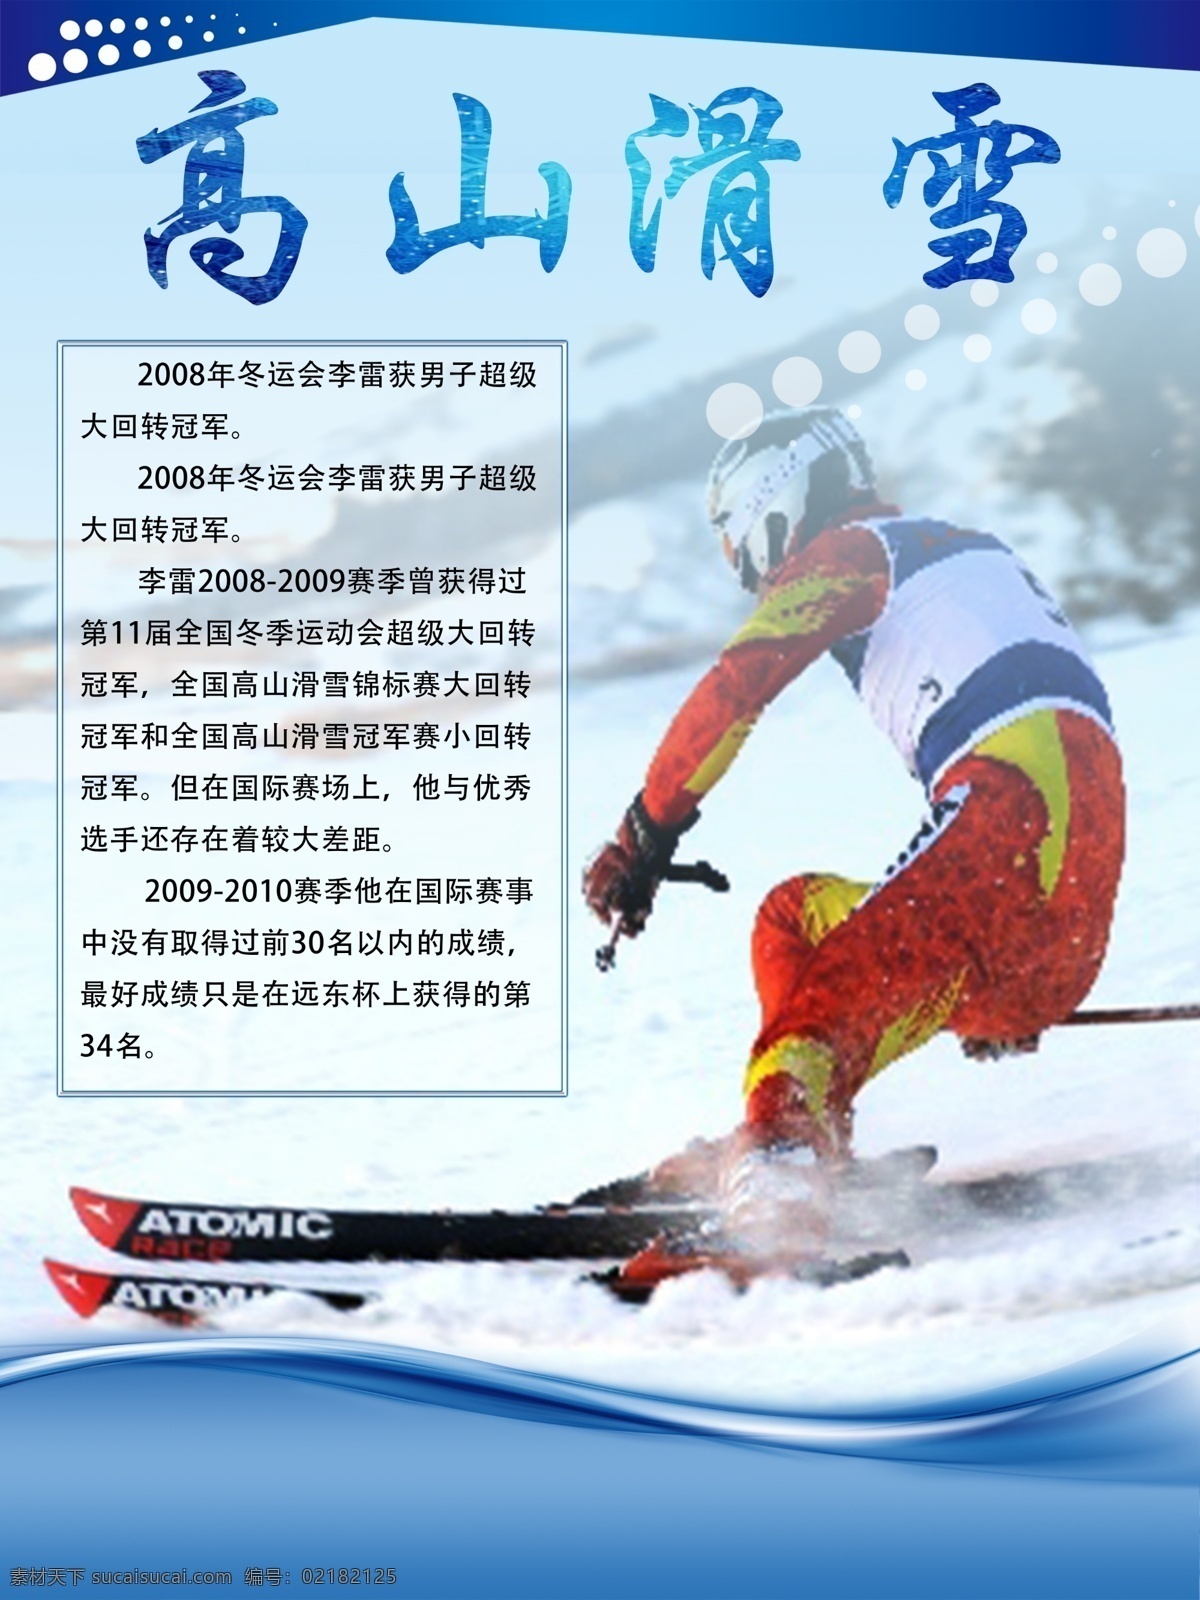 冬季滑雪 高山滑雪项目 滑雪 体育运动 体育项目